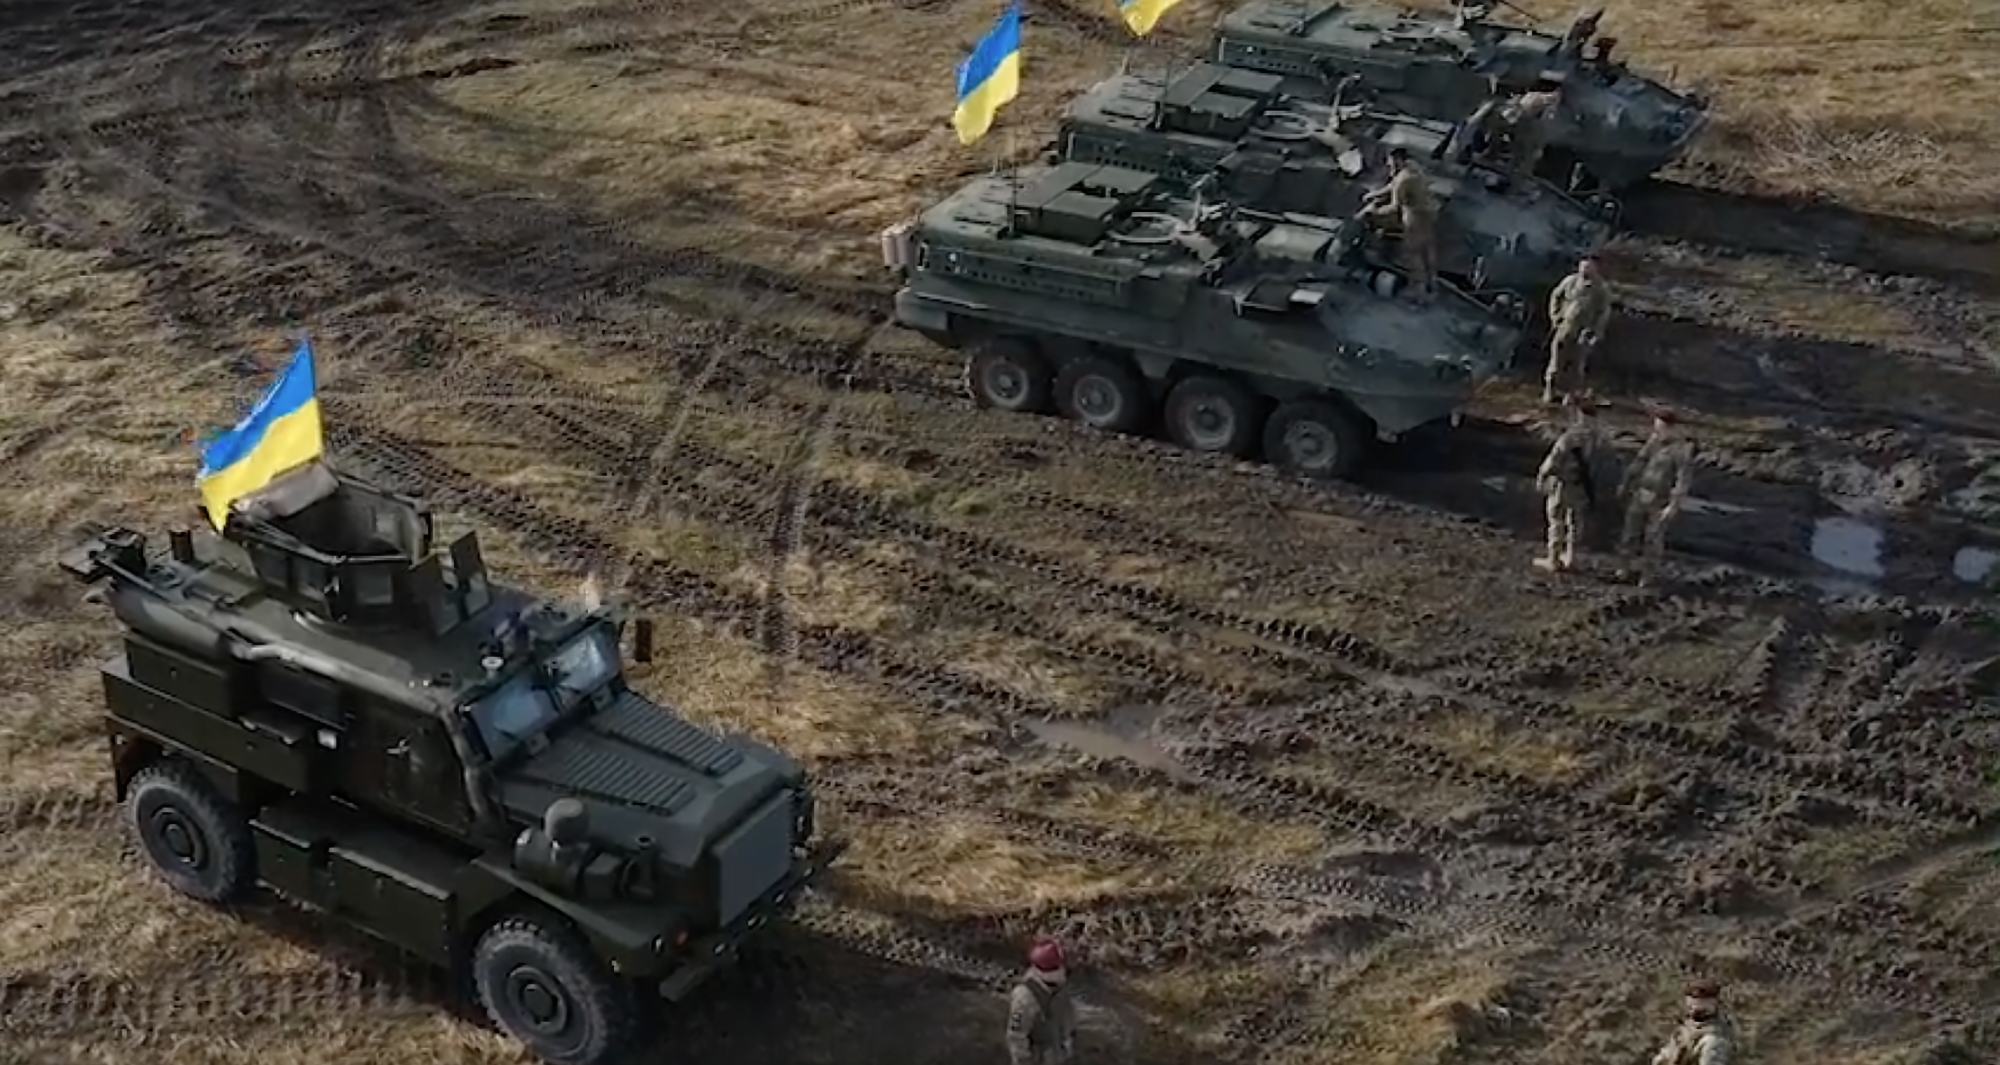 Le ministre ukrainien de la défense montre des BMP Stryker et des véhicules blindés Cougar américains en service dans l'armée ukrainienne (vidéo)